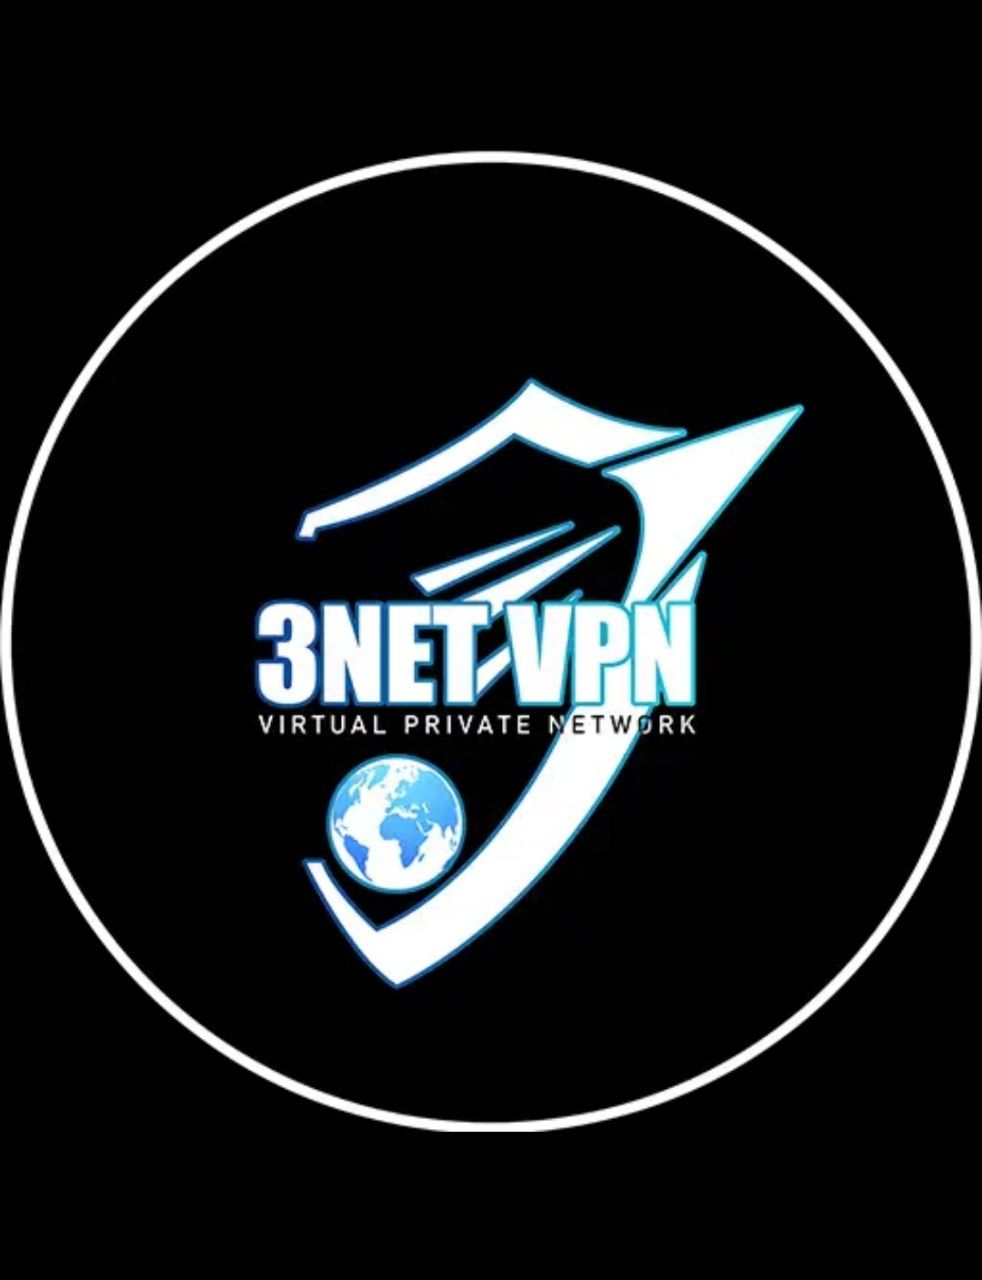 دانلود فیلتر شکن 3NET VPN برای گوشی همراه